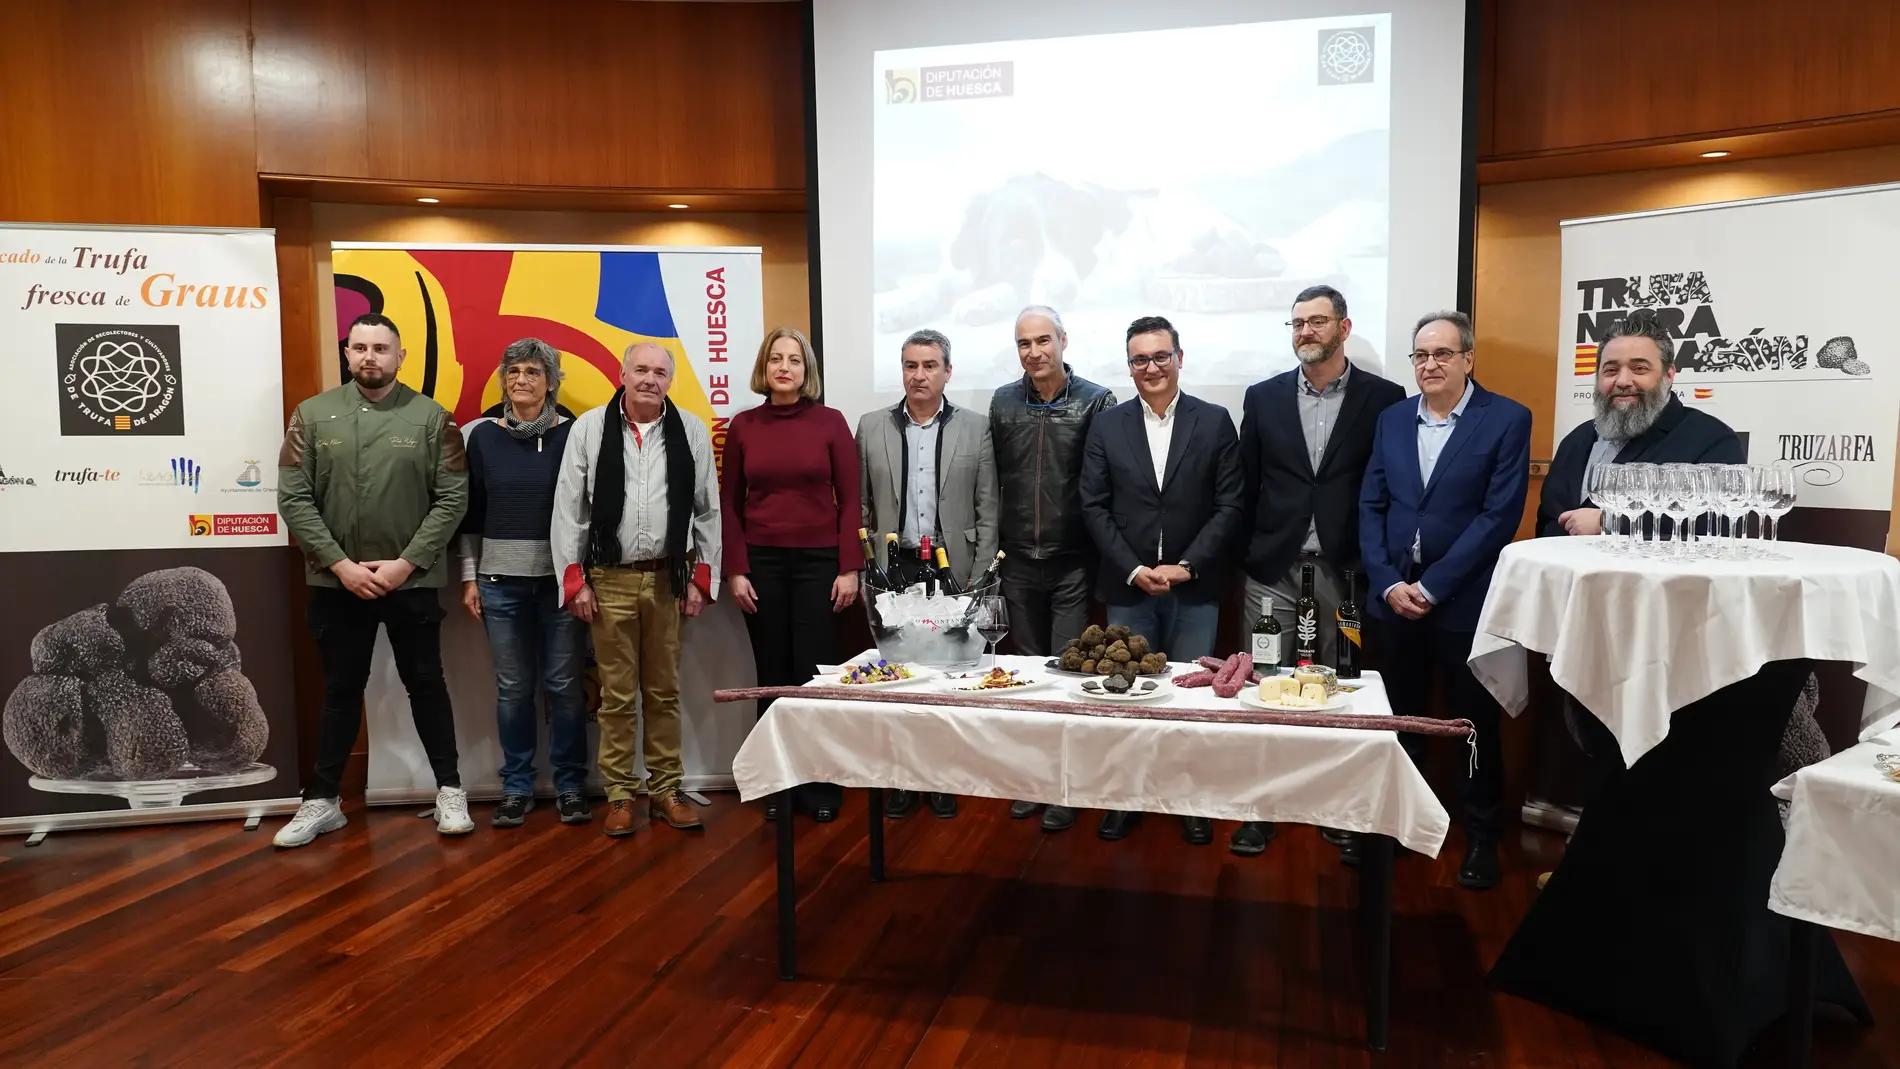 La DPH trae a Huesca el Mercado de la Trufa de Graus